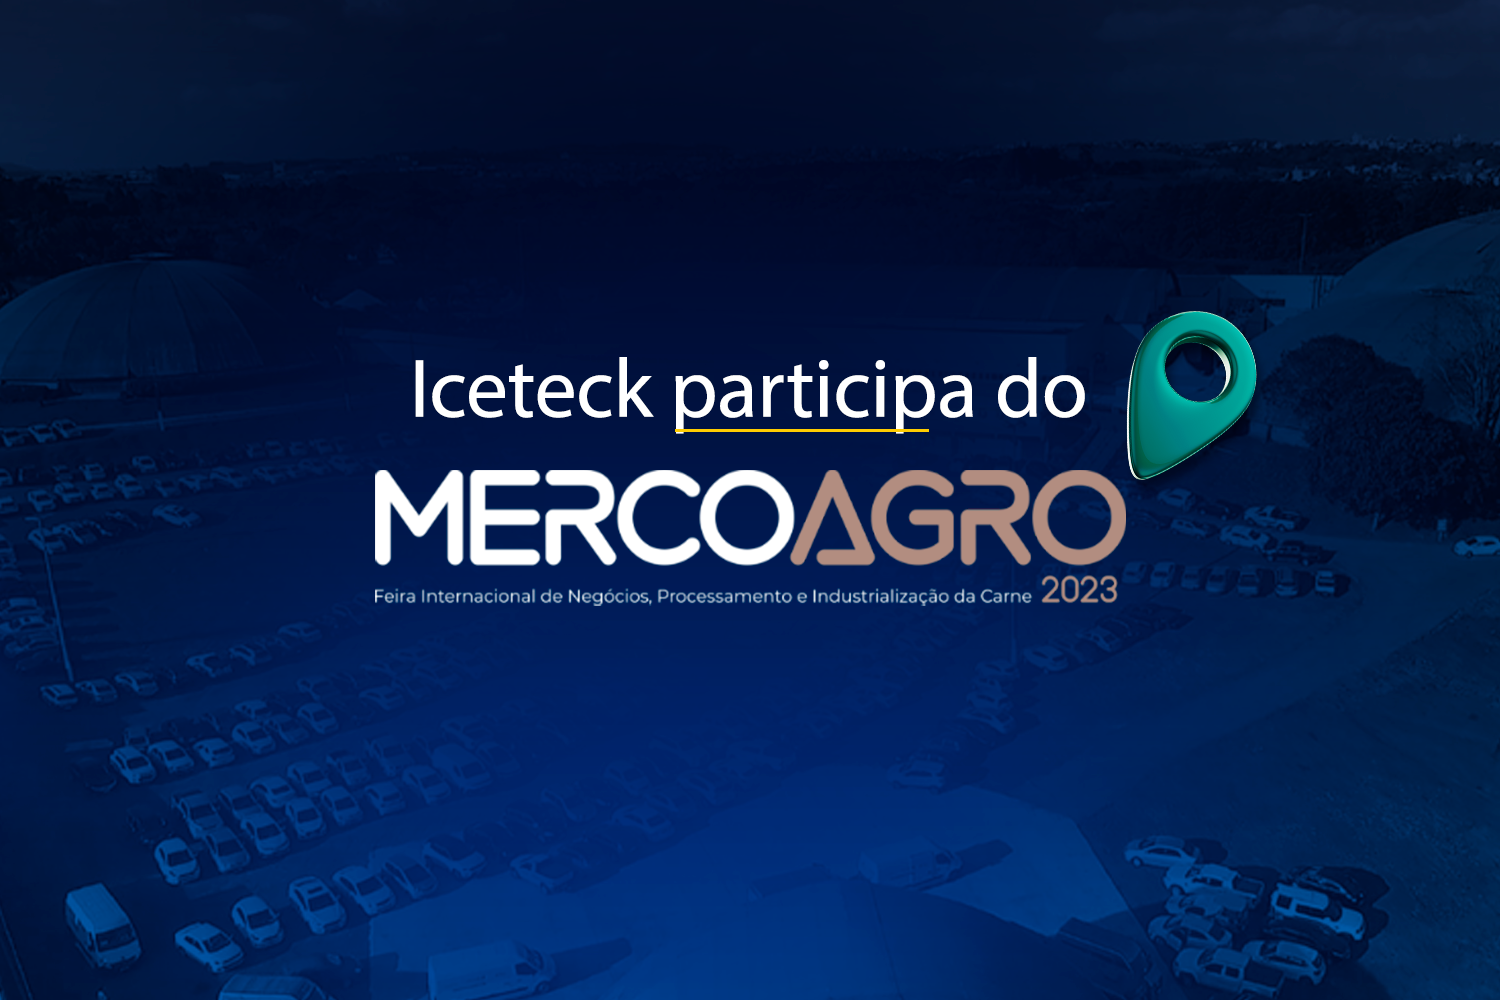 Mercoagro 2023 e Iceteck